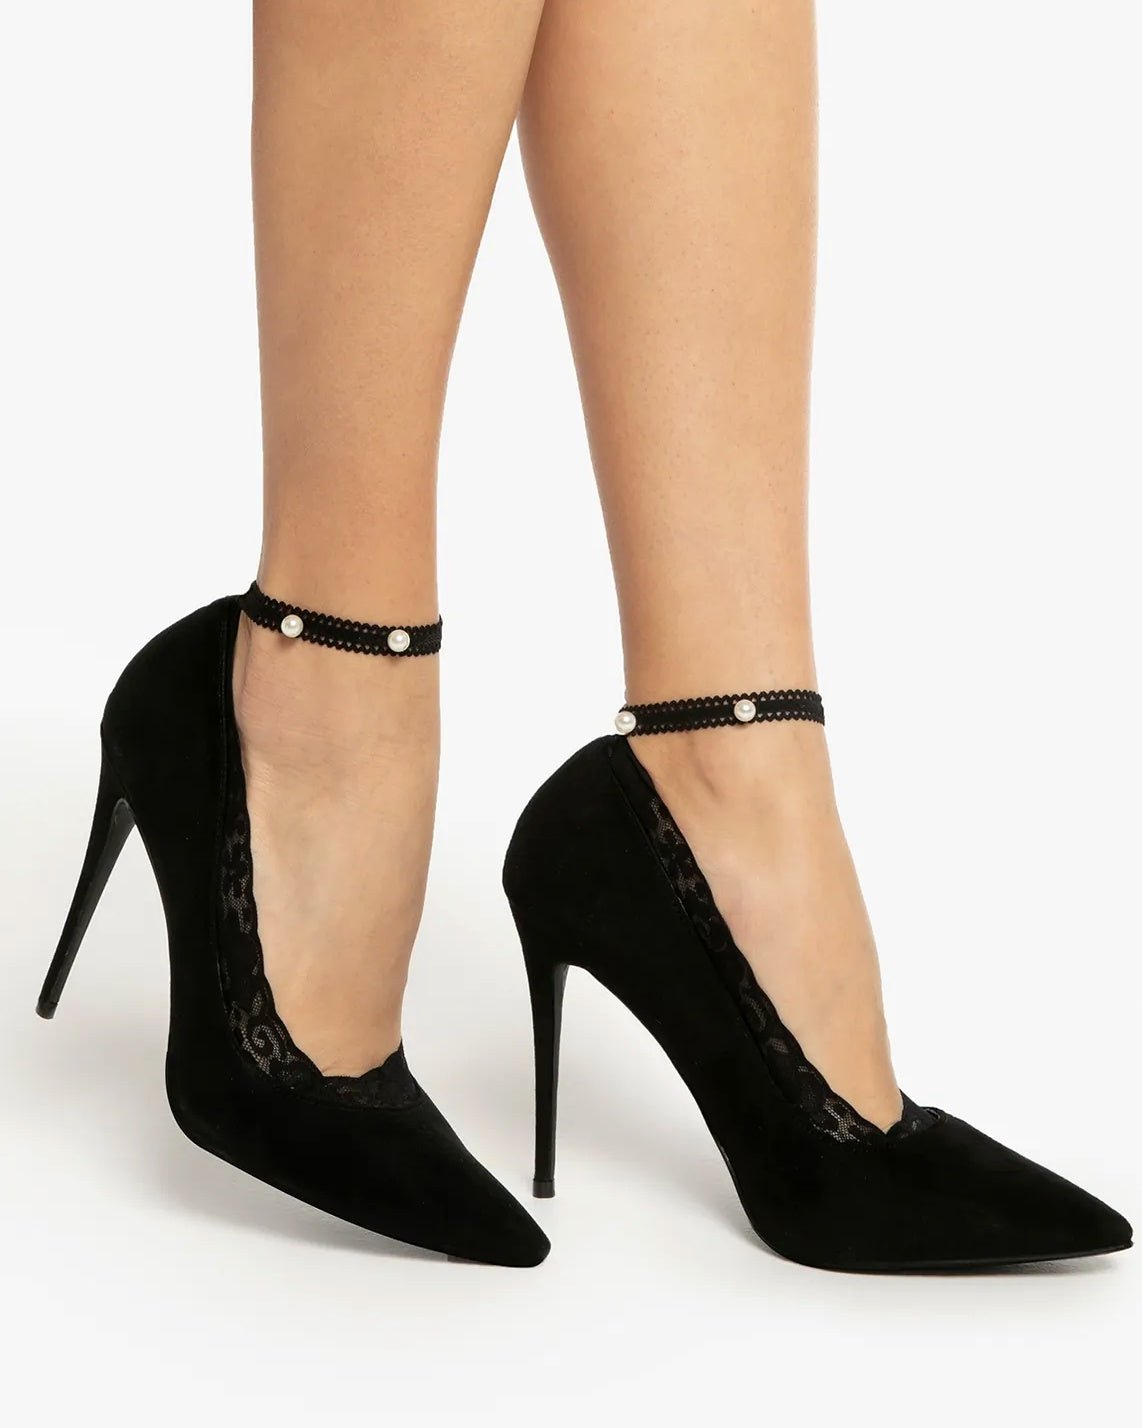 koronkowe czarne skarpetki damskie stopki z paskiem i buty na wysokim obcasie typu szpilki